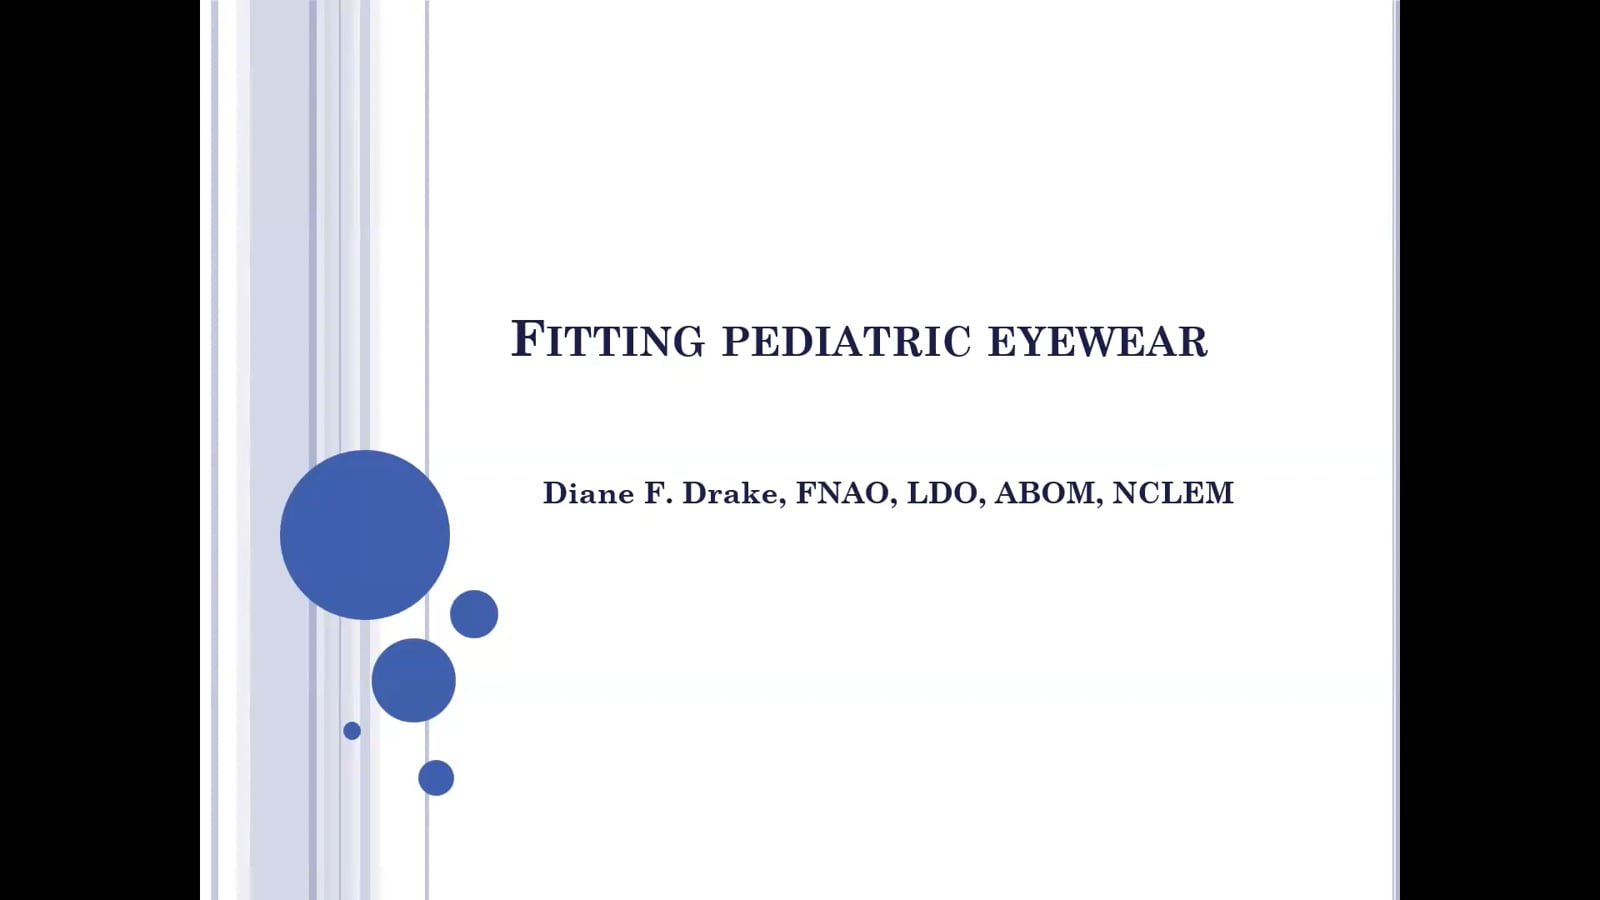 Fitting and Dispensing Pediatric Eyewear